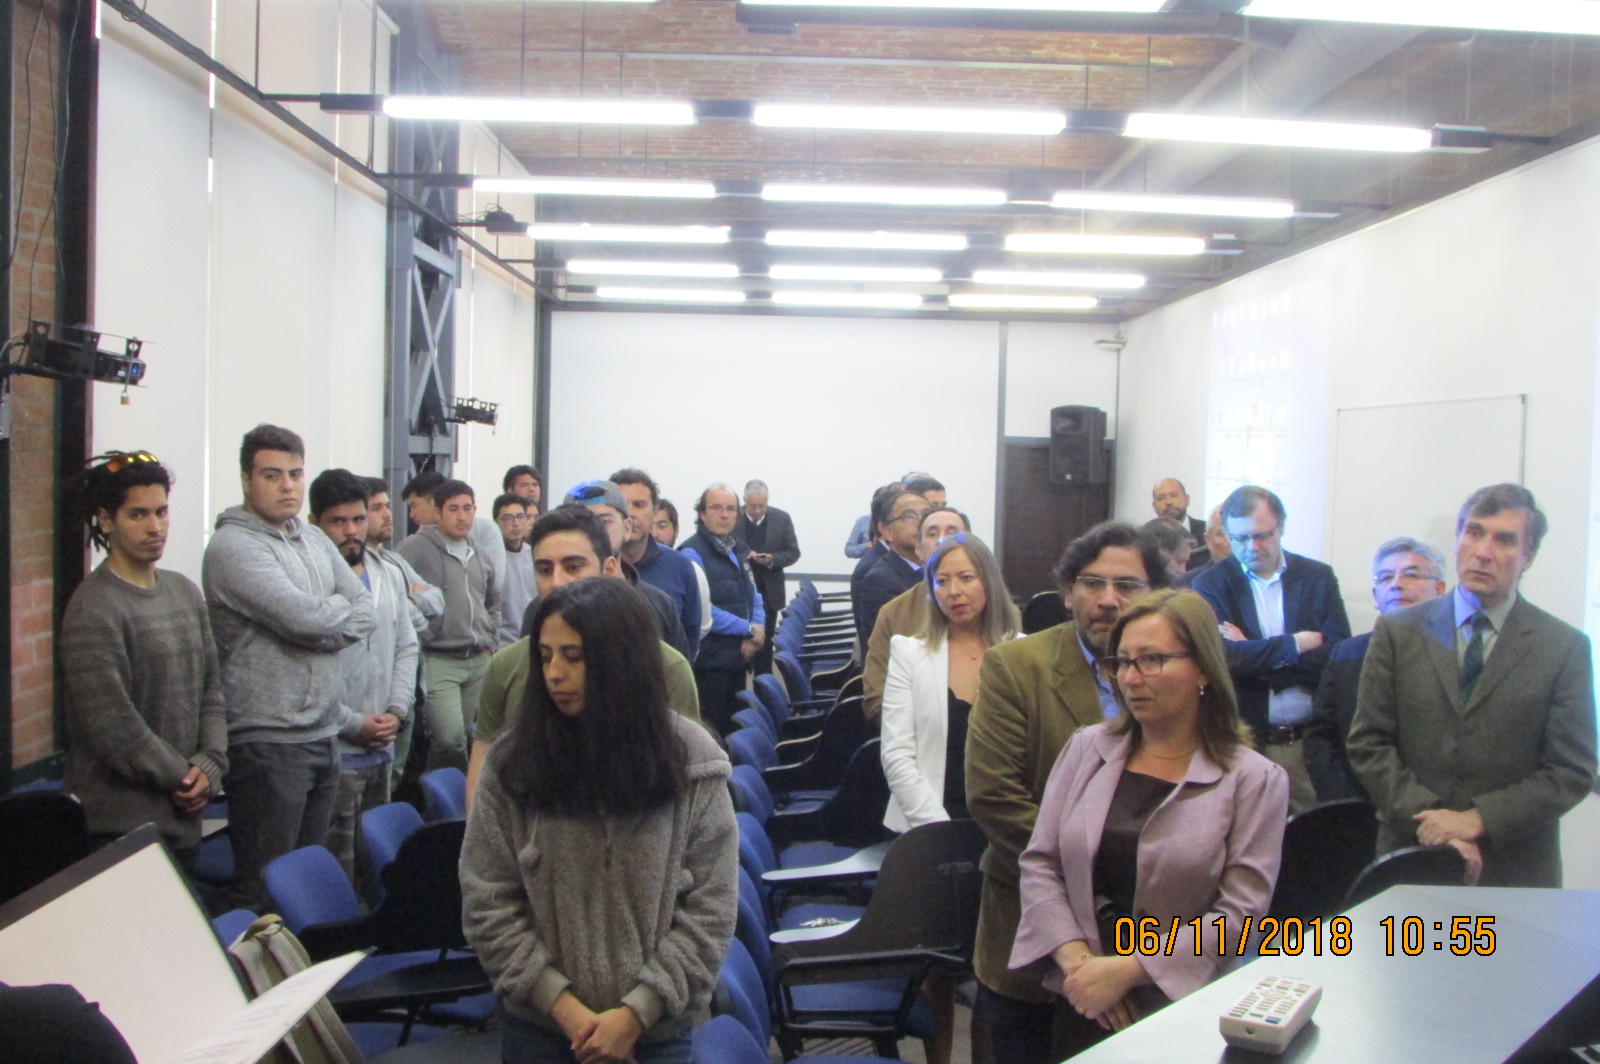 Asistentes entonando el himno de la Universidad de Valparaíso